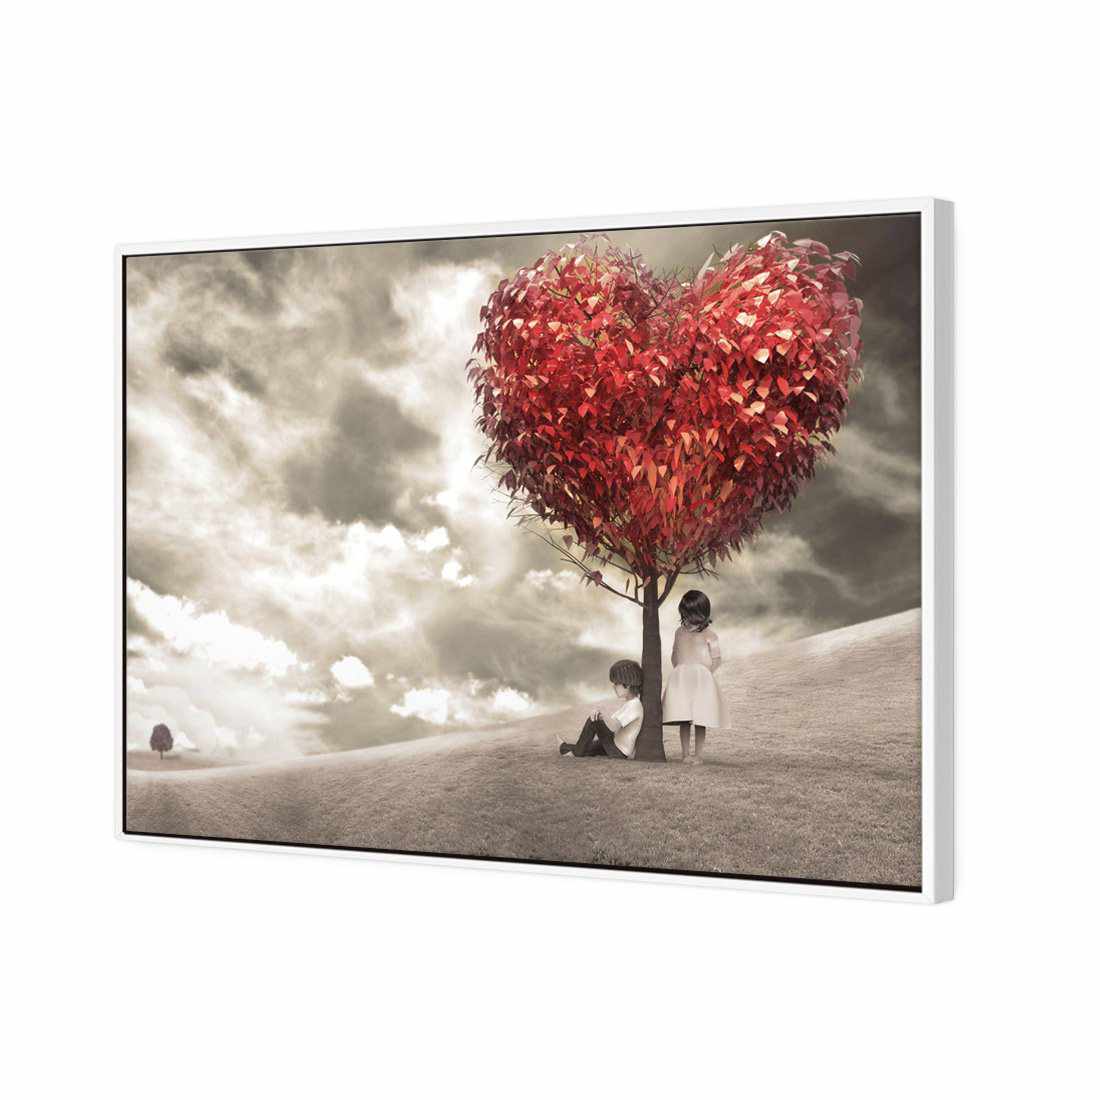 The Heart Tree Canvas Art-Canvas-Wall Art Designs-45x30cm-Canvas - White Frame-Wall Art Designs